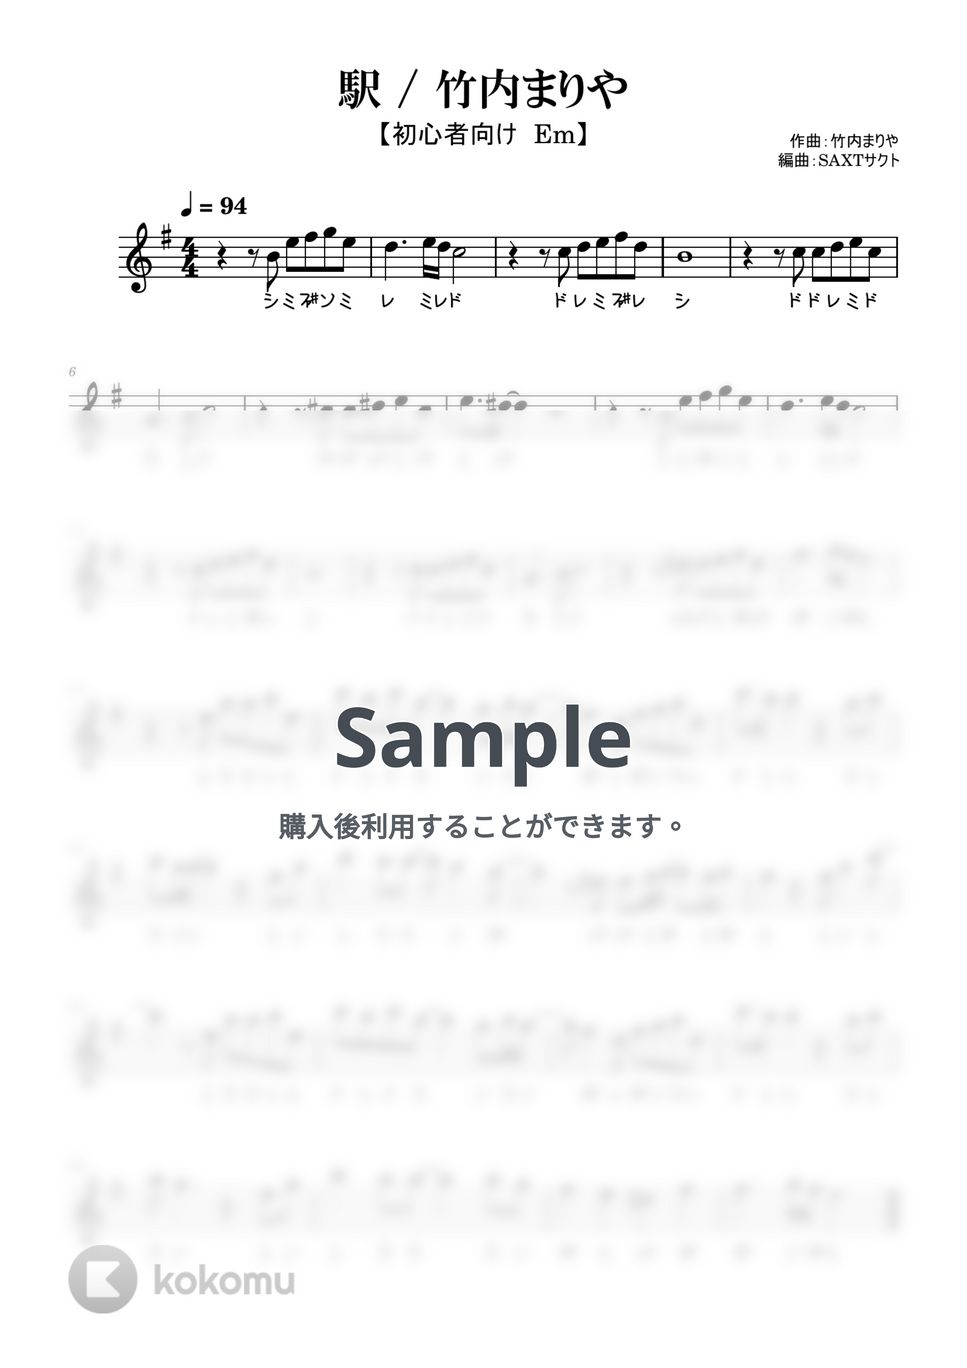 竹内まりや - 駅 (めちゃラク譜) by SAXT